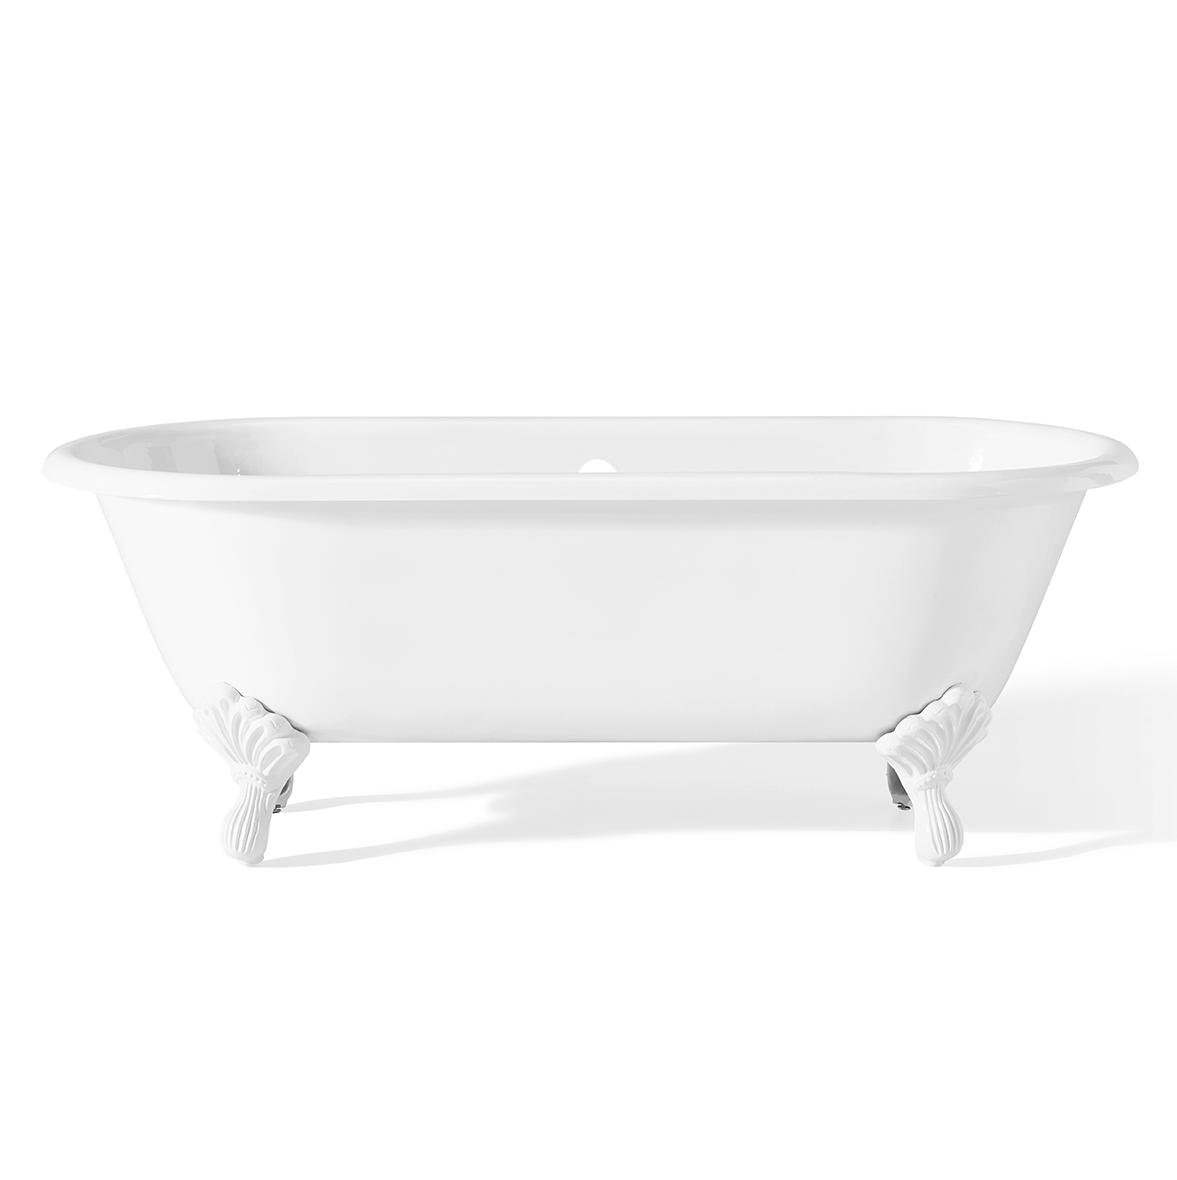 Sbordoni Чугунная ванна “Masaccio” 170х78см, цвет: белый